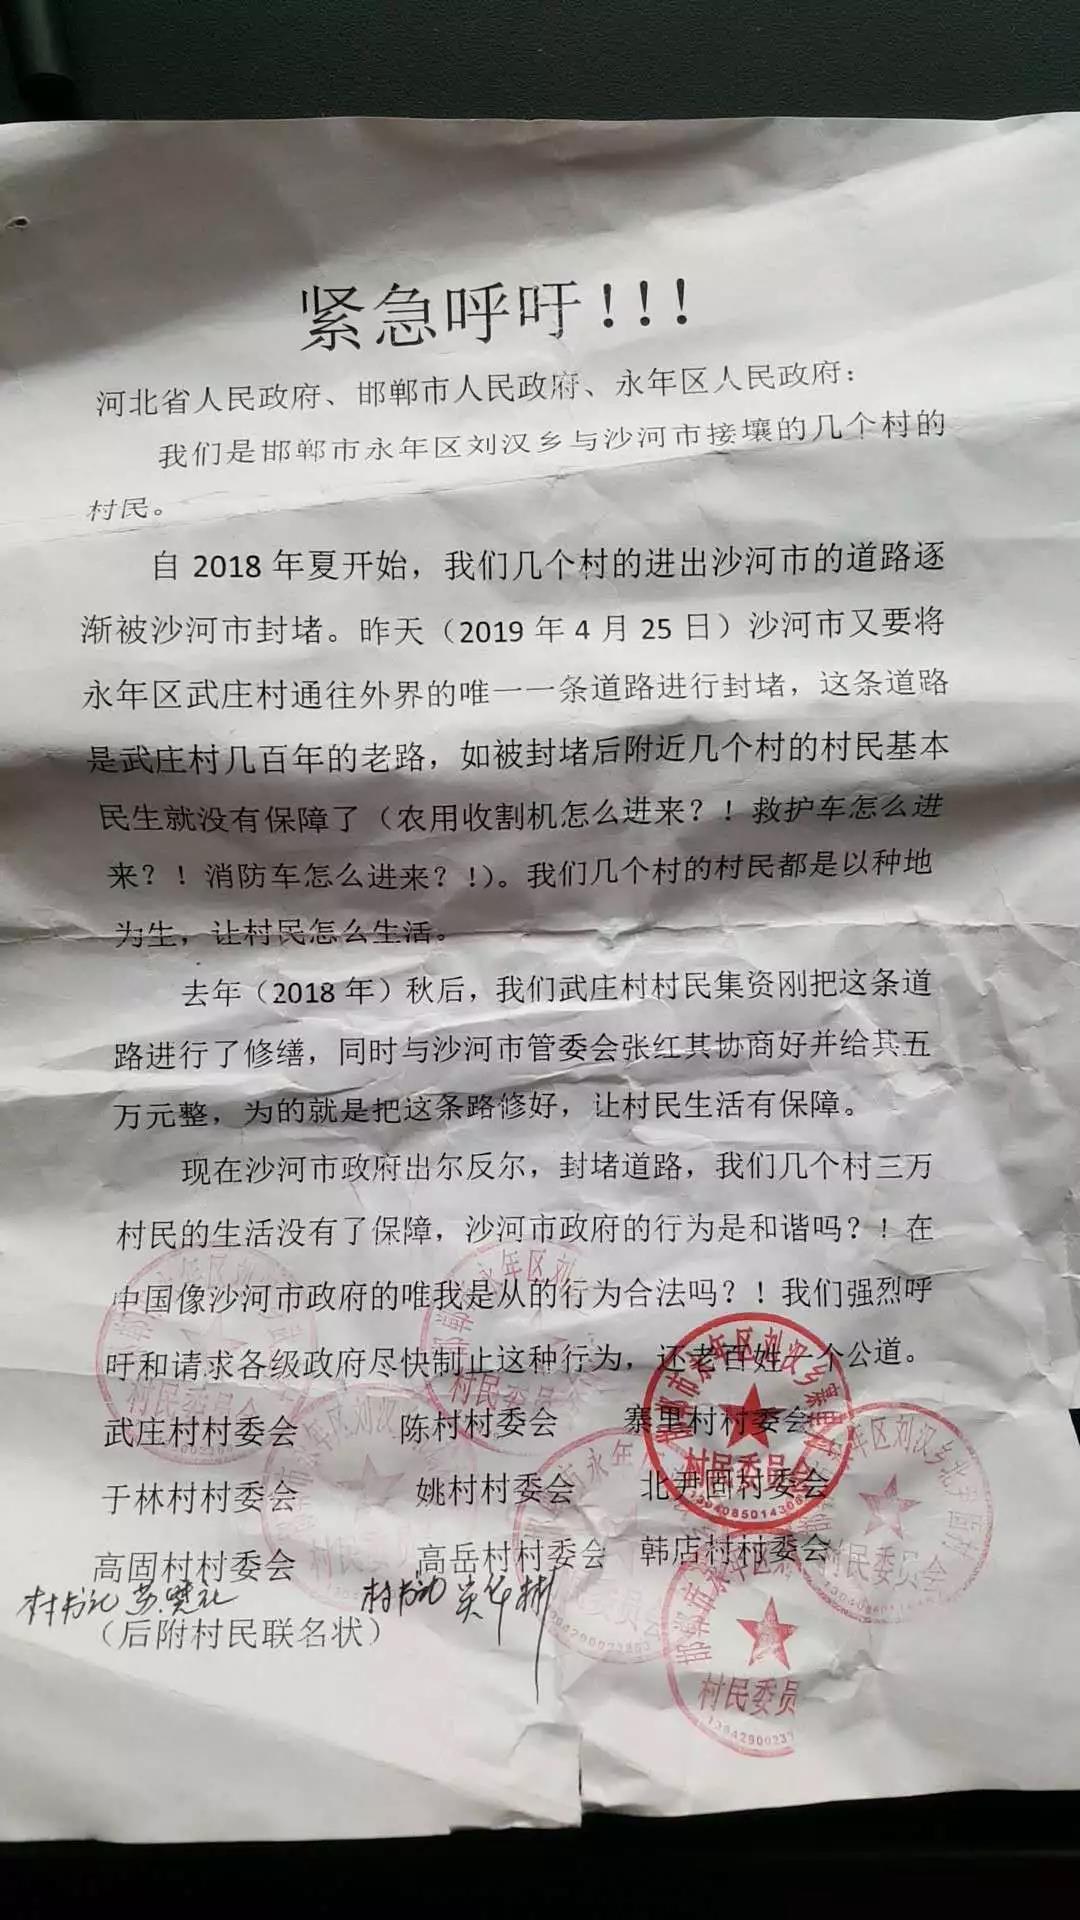 ▲9村委会联名呼吁取消限高。图/新京报网